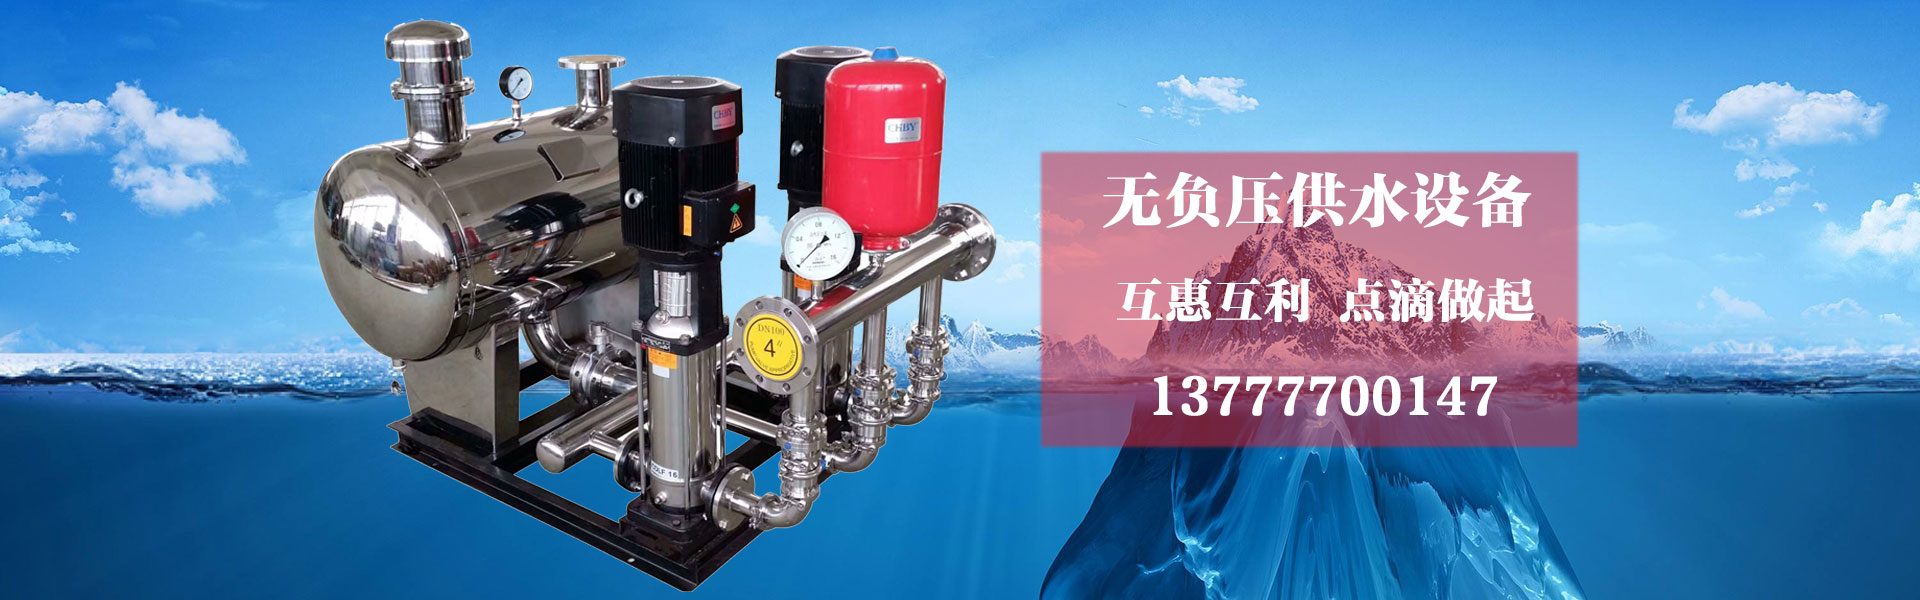 _上海叠泉水泵(集团)有限公司